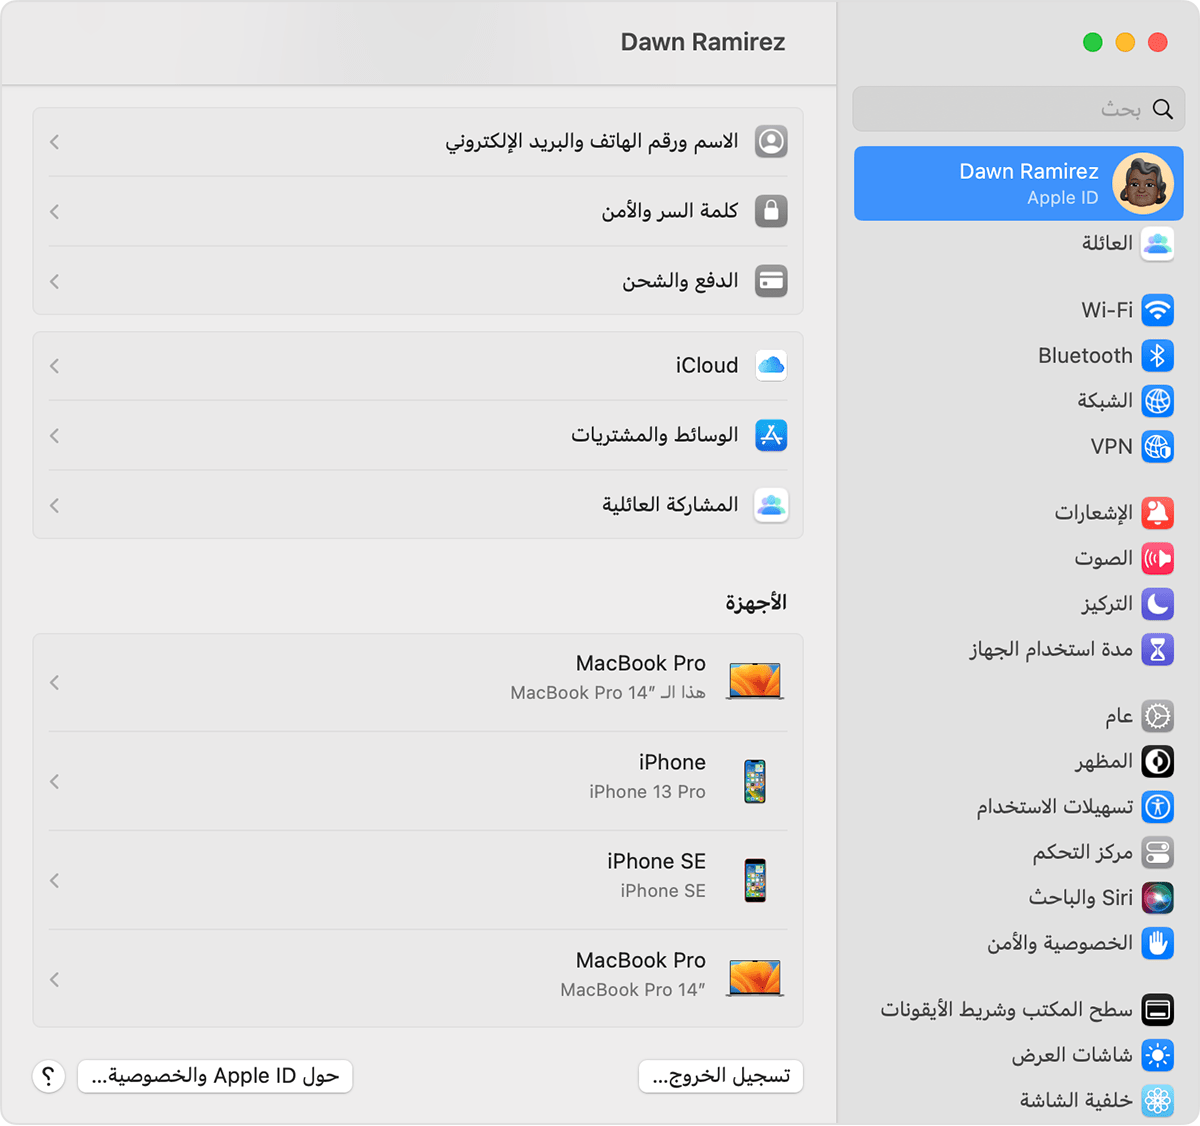 على جهاز Mac، اعثر على الأجهزة التي قمت بتسجيل الدخول إليها باستخدام Apple ID الخاص بك في 